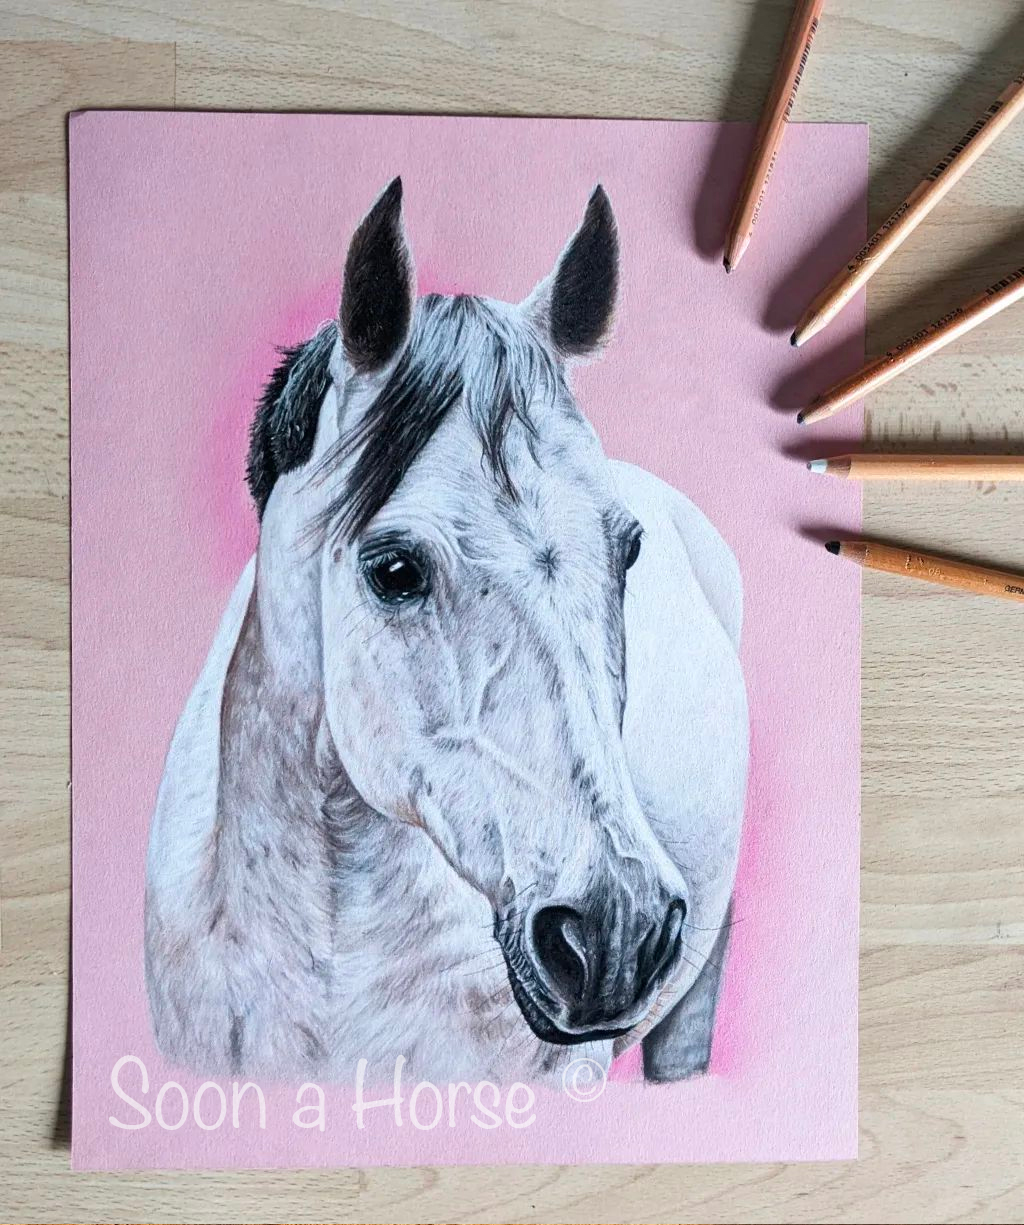 dessin pastels d'un cheval gris